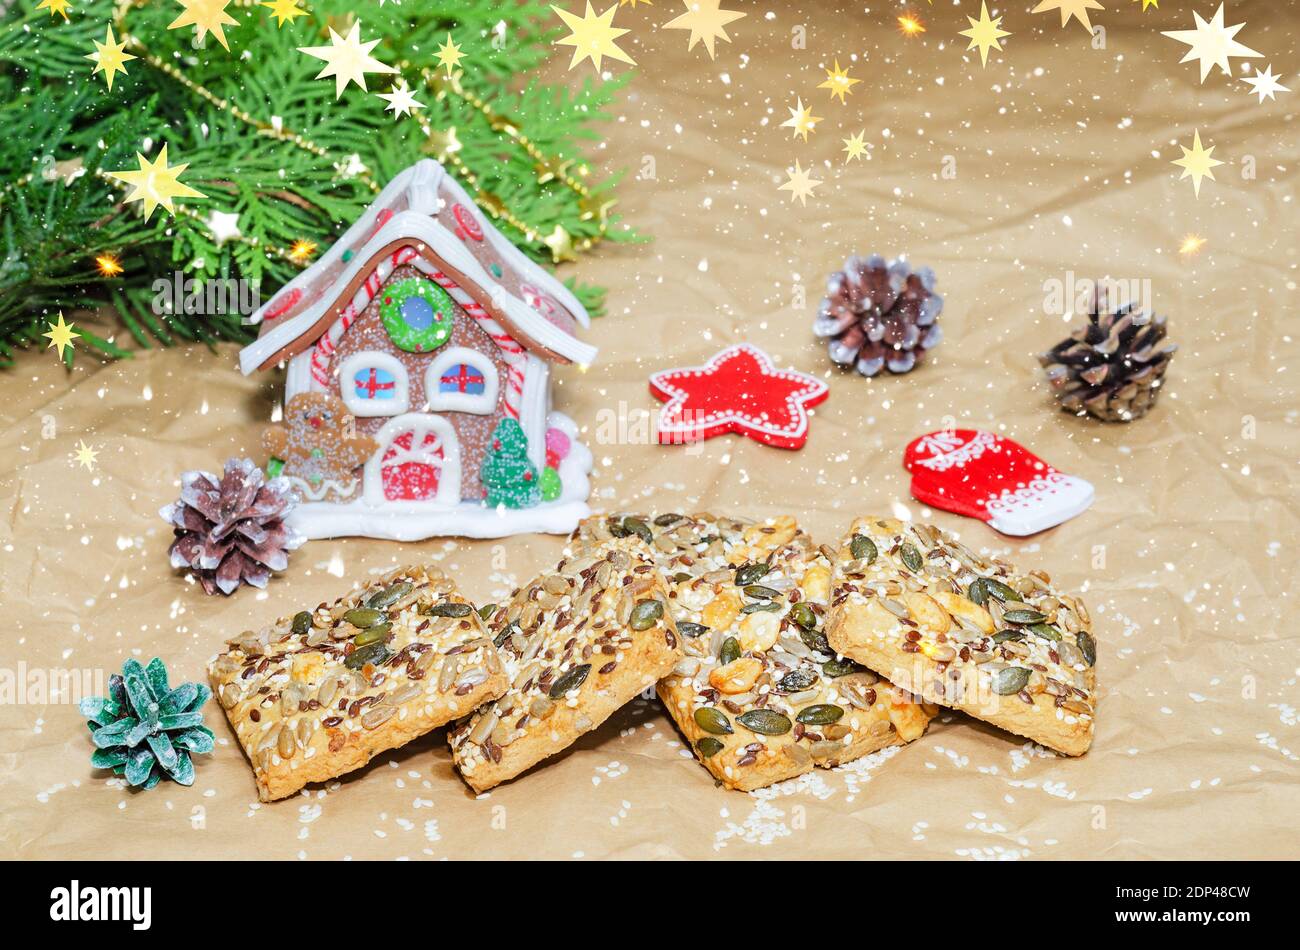 Shortbread-Kekse mit verschiedenen Samen und Weihnachtsschmuck auf zerknittertem Papier. Überlagern von Schnee und Sternen Stockfoto